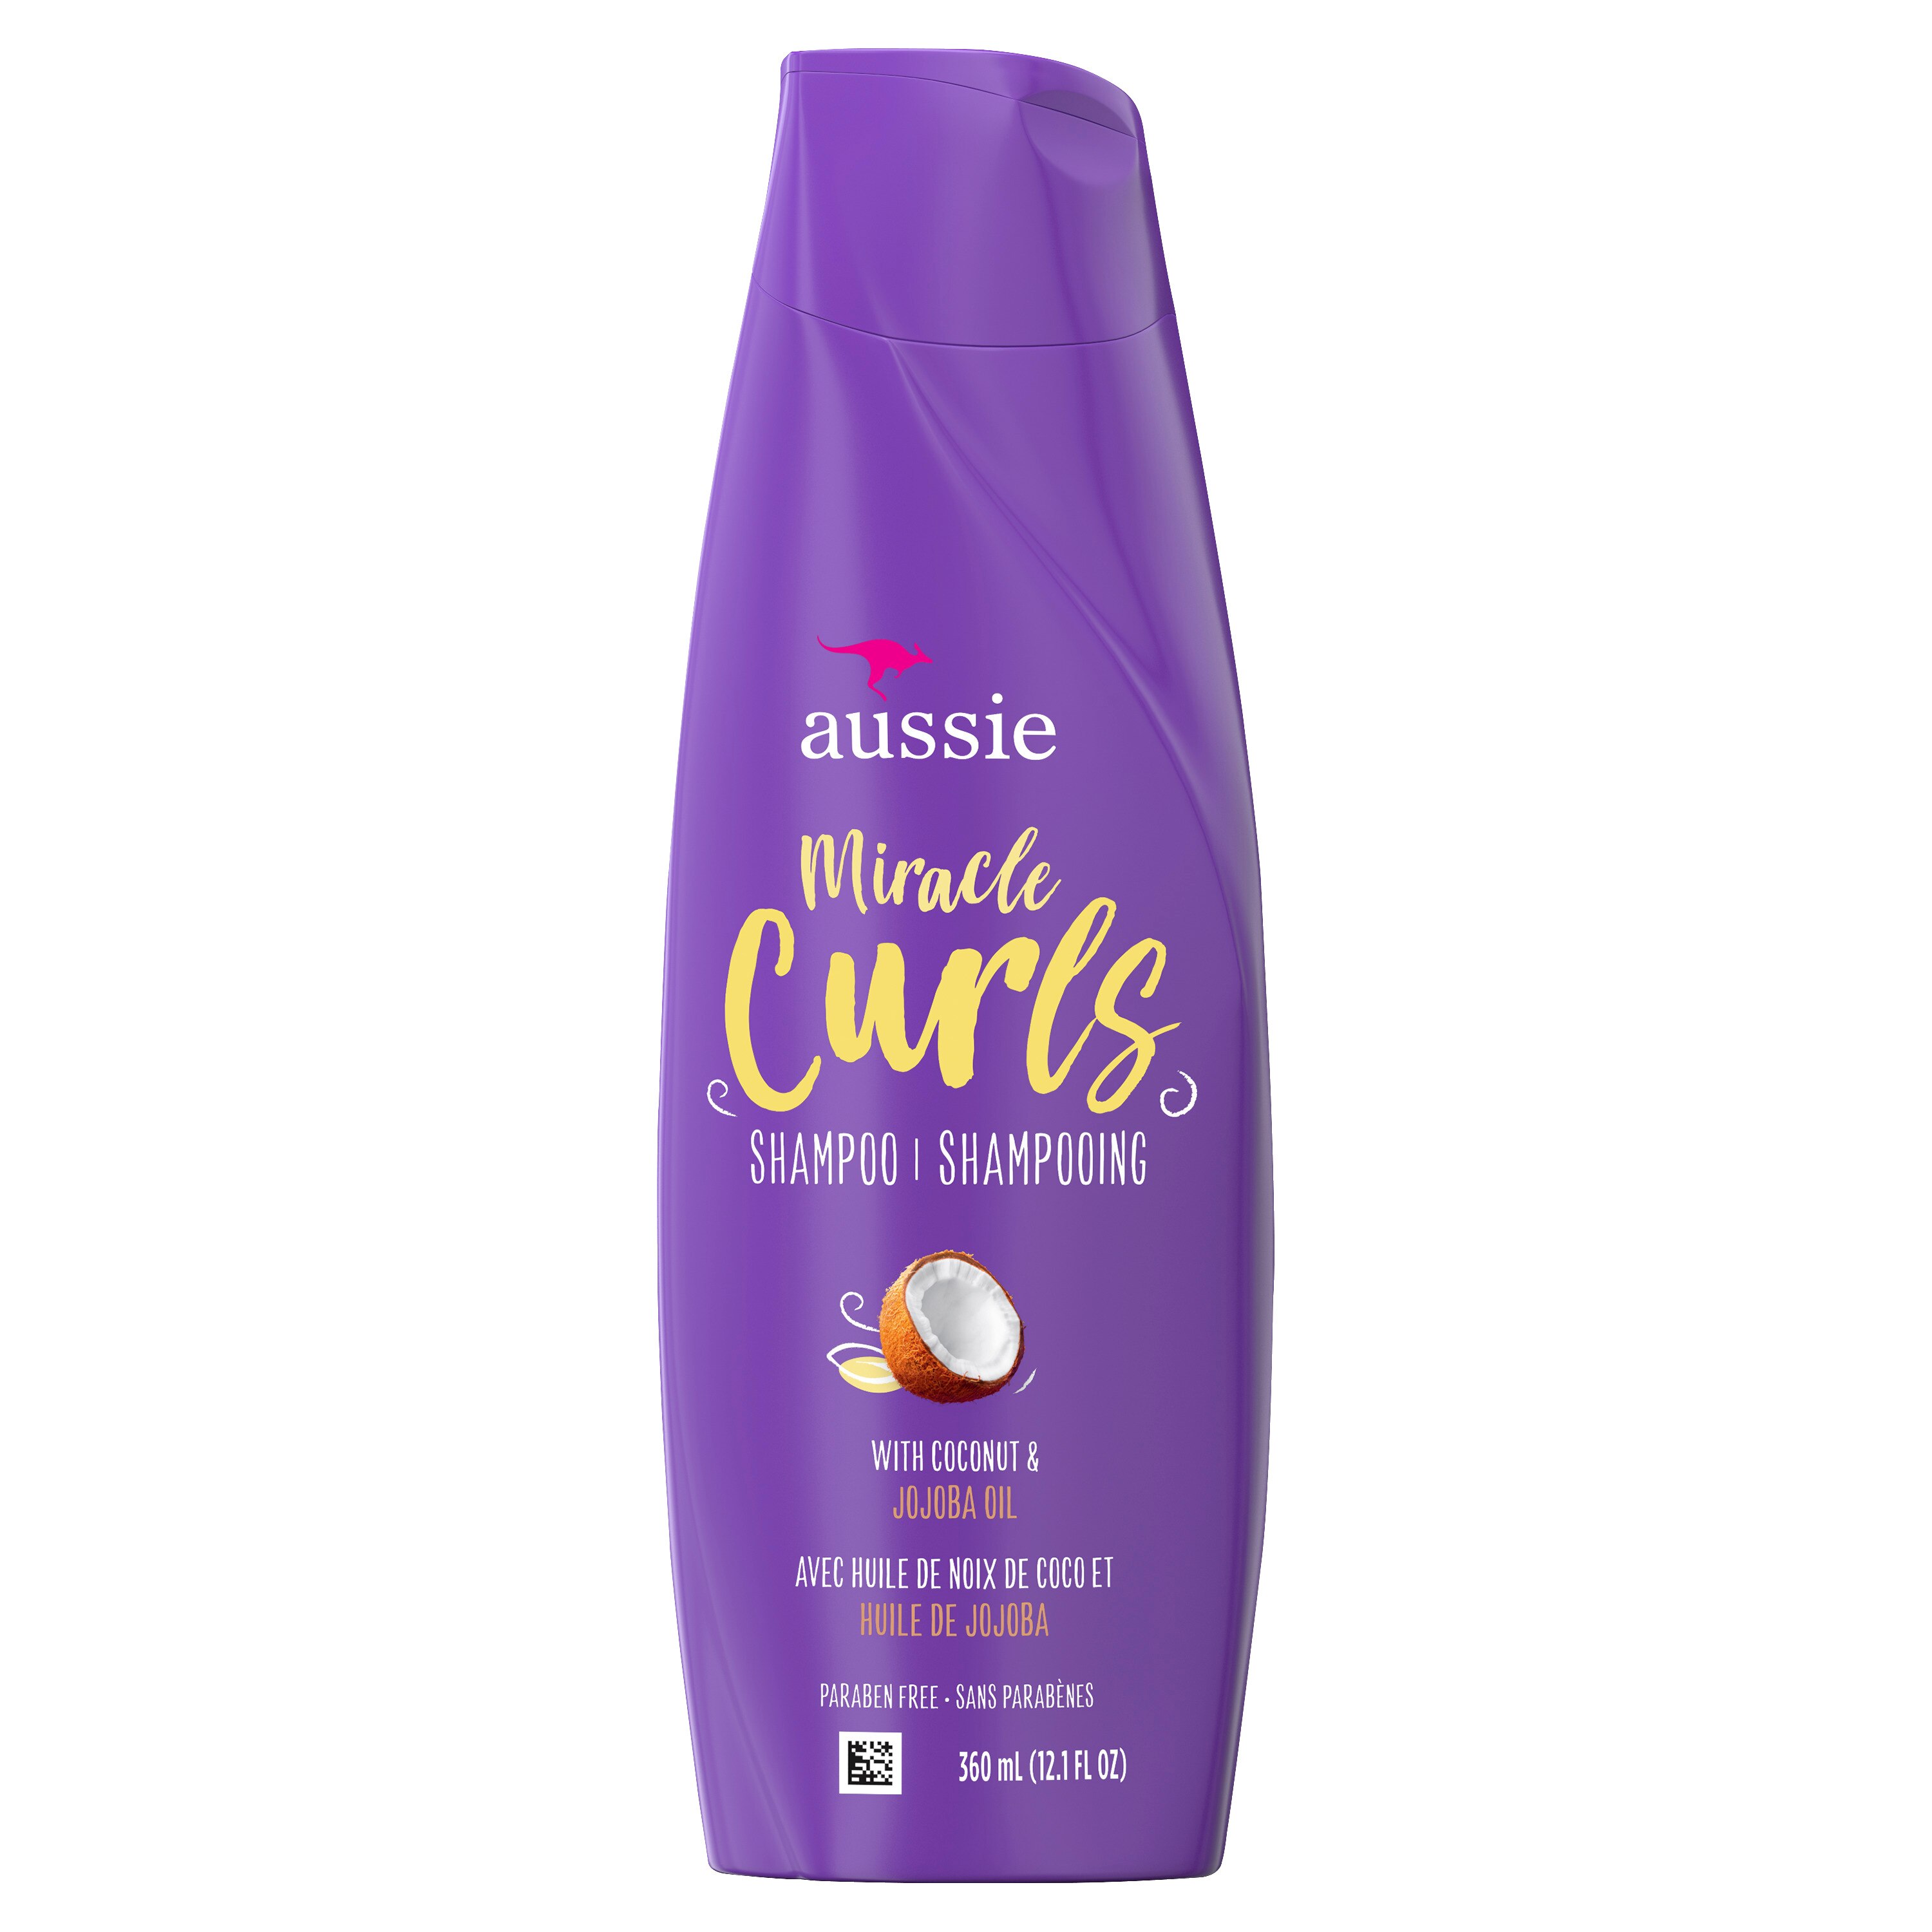 Aussie Miracle Curls - Champú sin parabenos con aceite de coco y jojoba, 12.1 oz